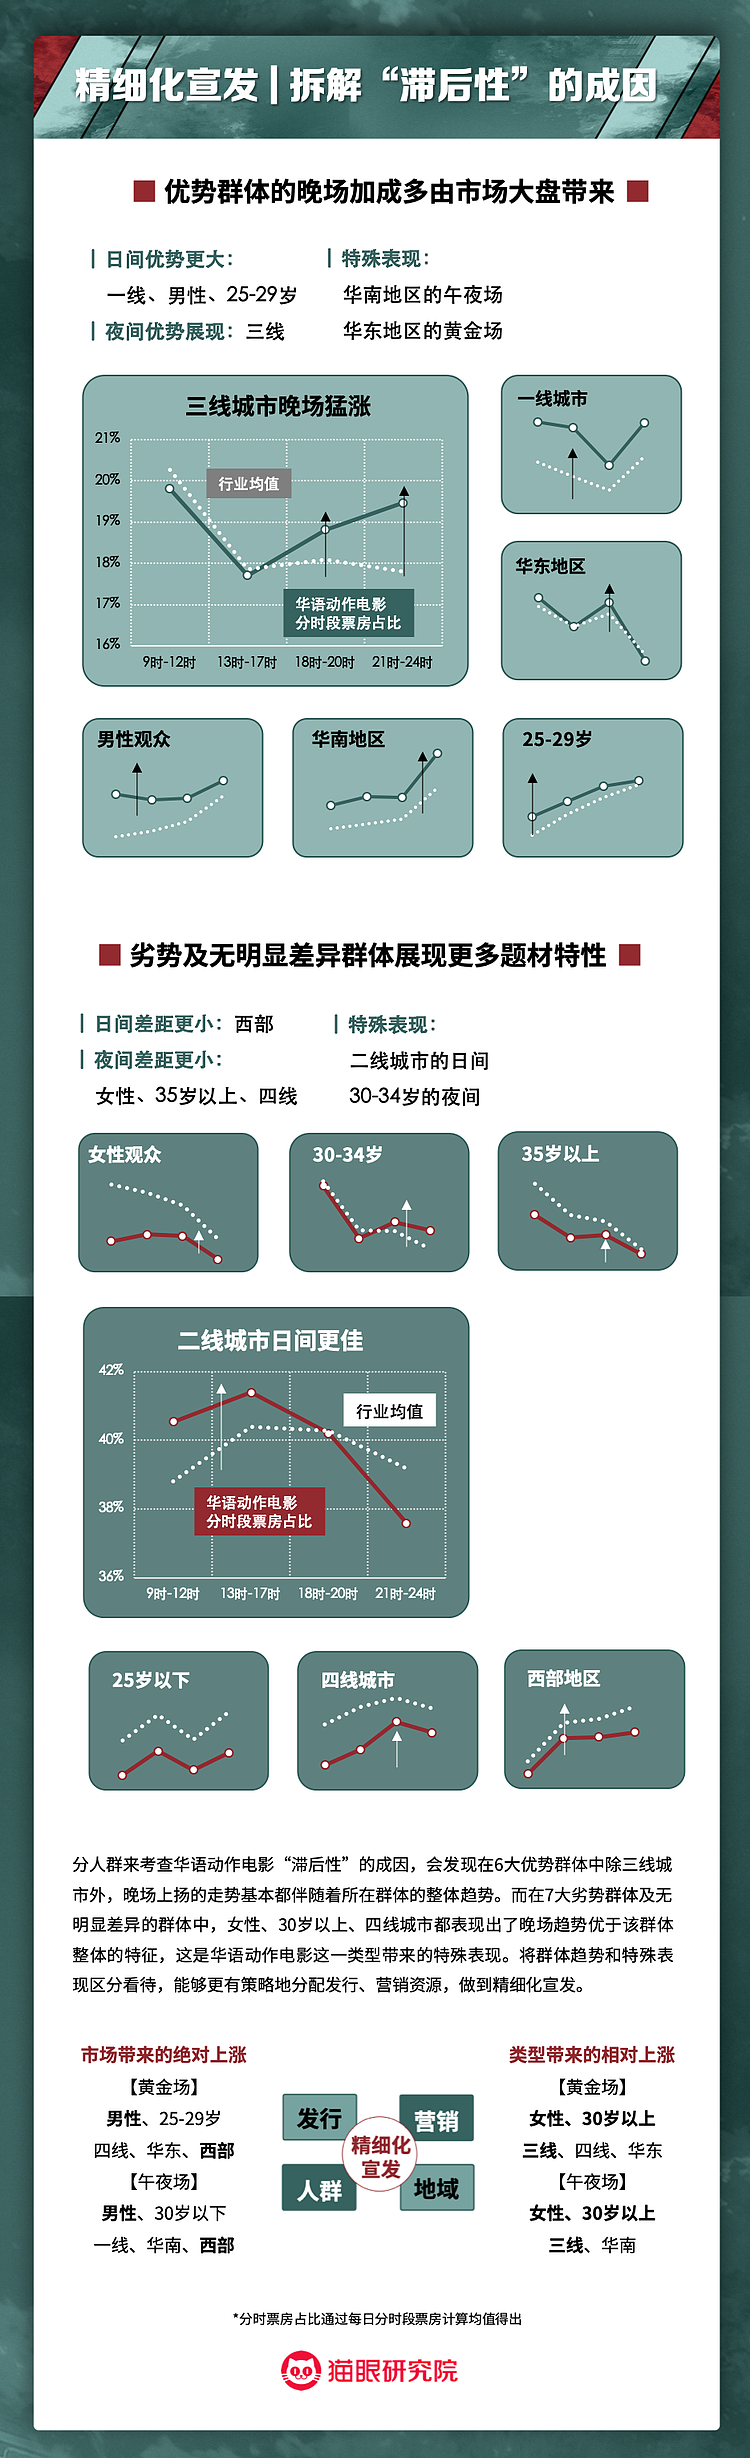 华语动作电影数据洞察：将优势点和突破口部署于制发放各环节 - 6